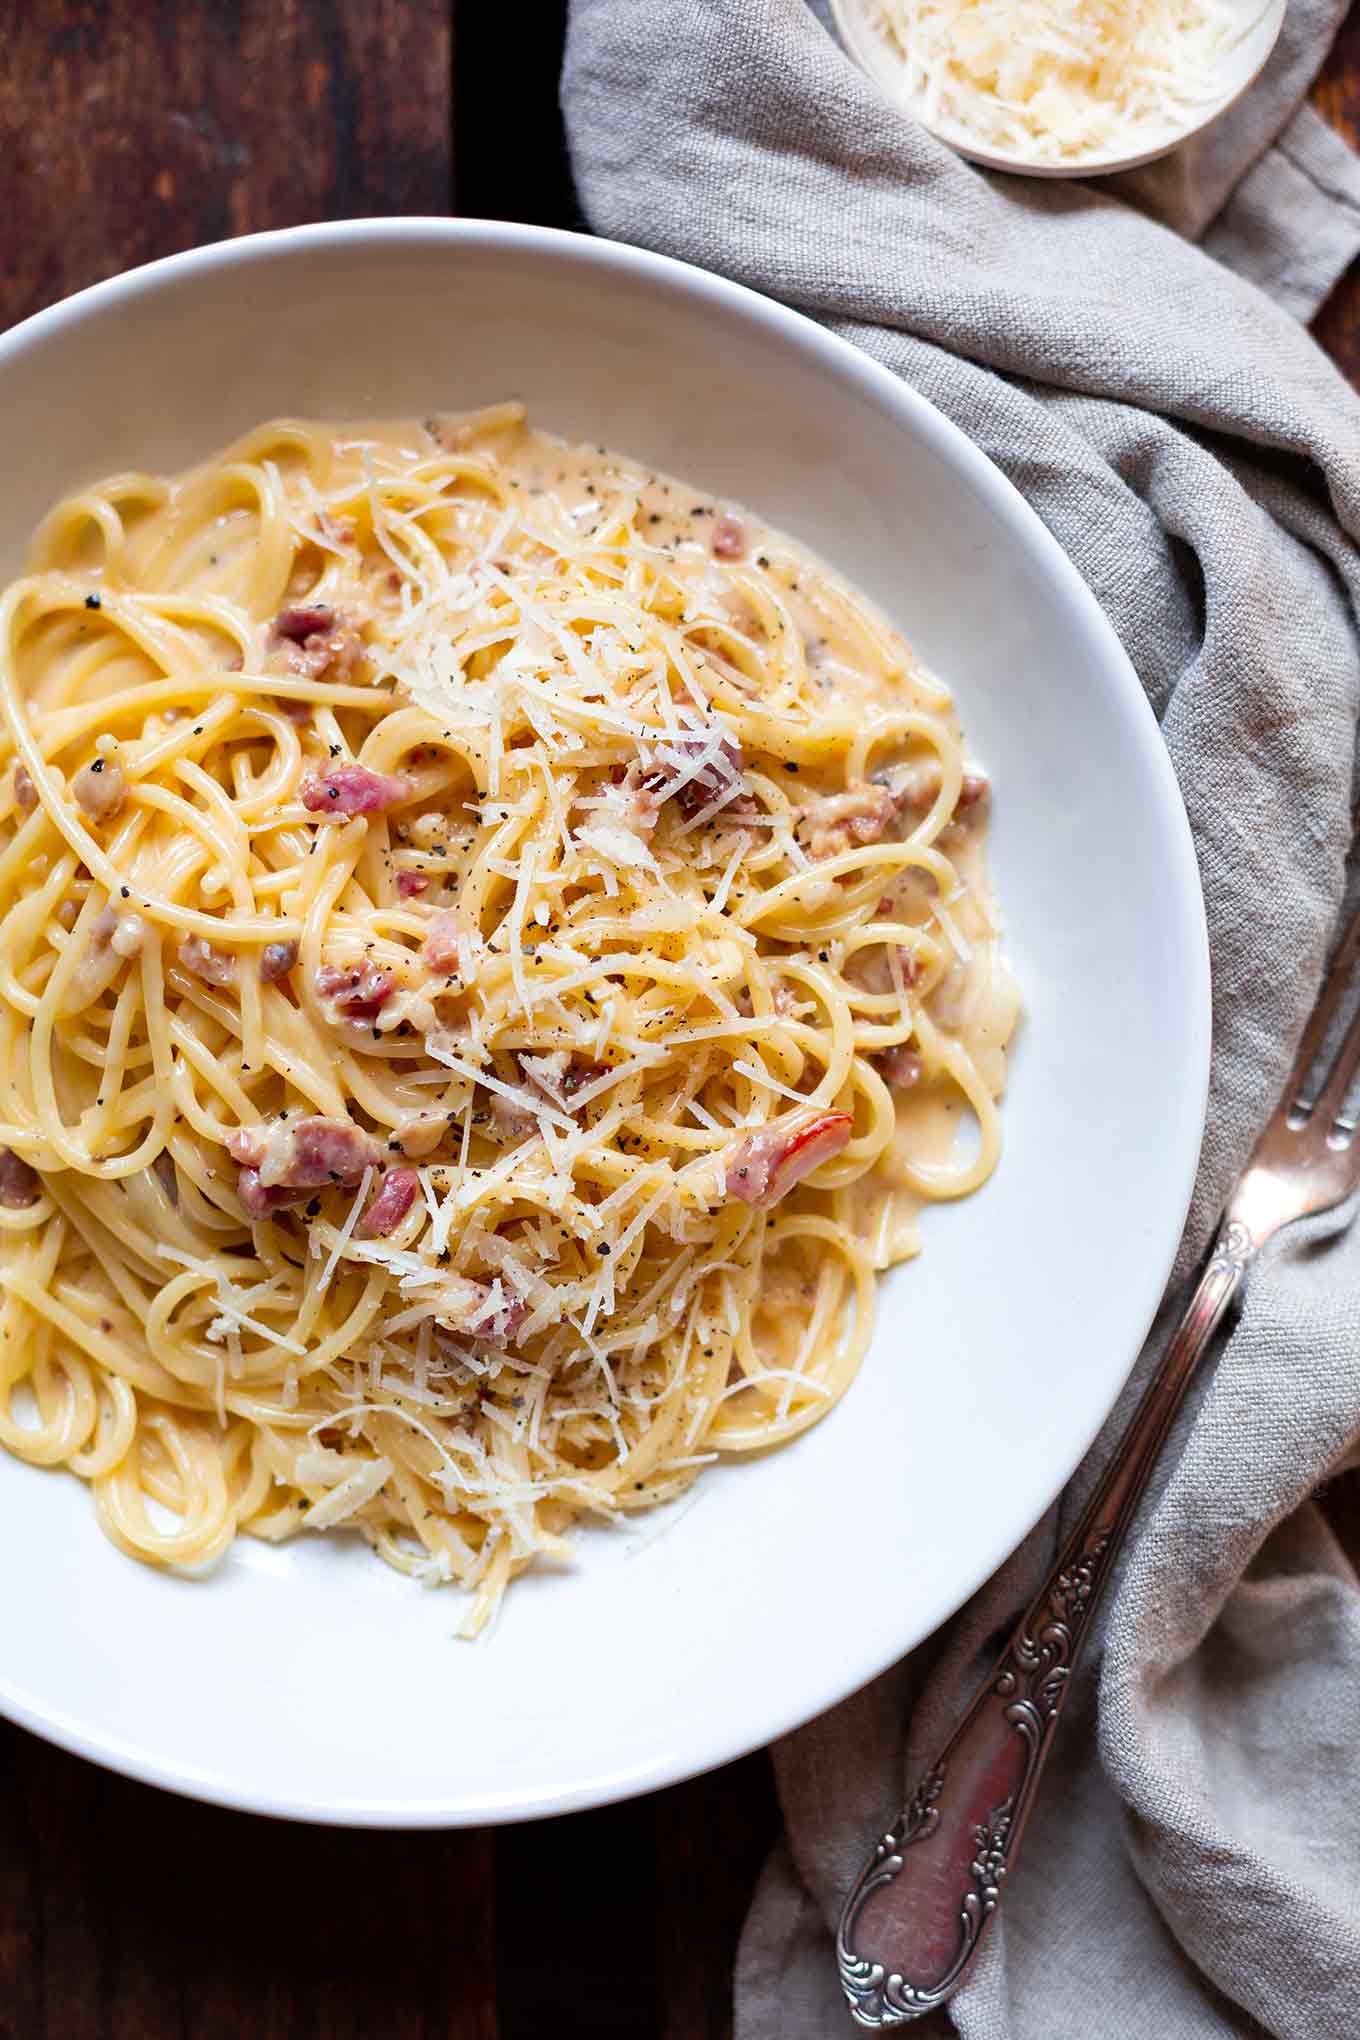 Einfache Spaghetti Carbonara. Dieses 6-Zutaten Rezept ist herzhaft, in 20 Minuten fertig und unglaublich cremig. - Kochkarussell.com #carbonara #pasta #rezept #schnellundeinach 